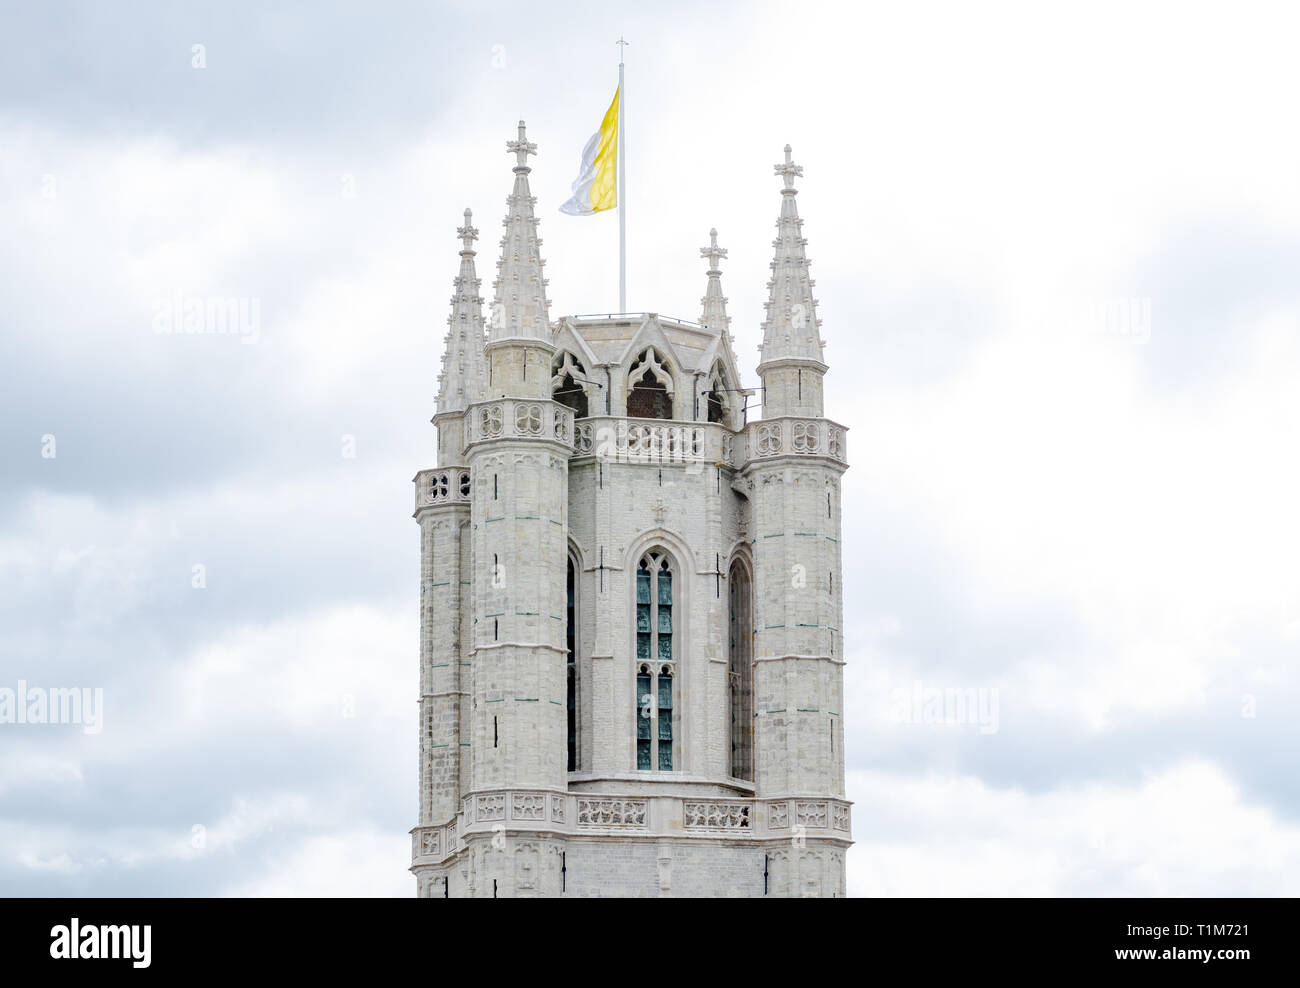 Turm der Kathedrale Saint Bavo ist eine gotische Kathedrale im historischen Zentrum der belgischen Stadt Gent. Stockfoto